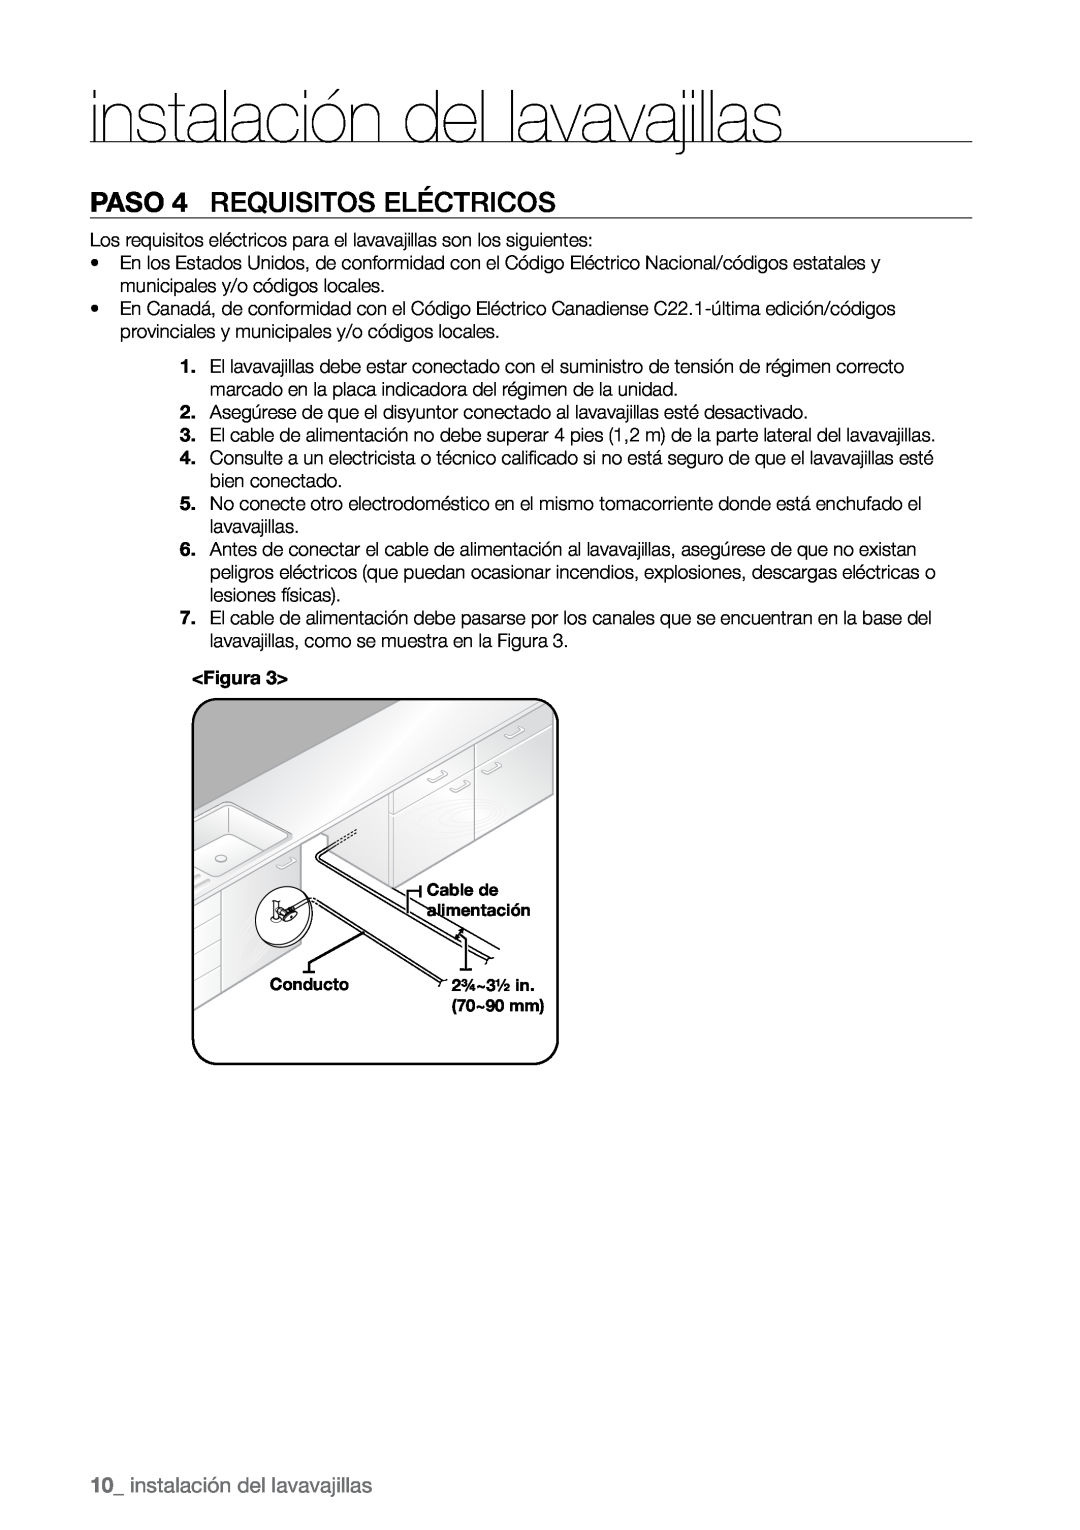 Samsung DMR57, DMR78, DMR77 manual PASO 4 Requisitos eléctricos, instalación del lavavajillas 